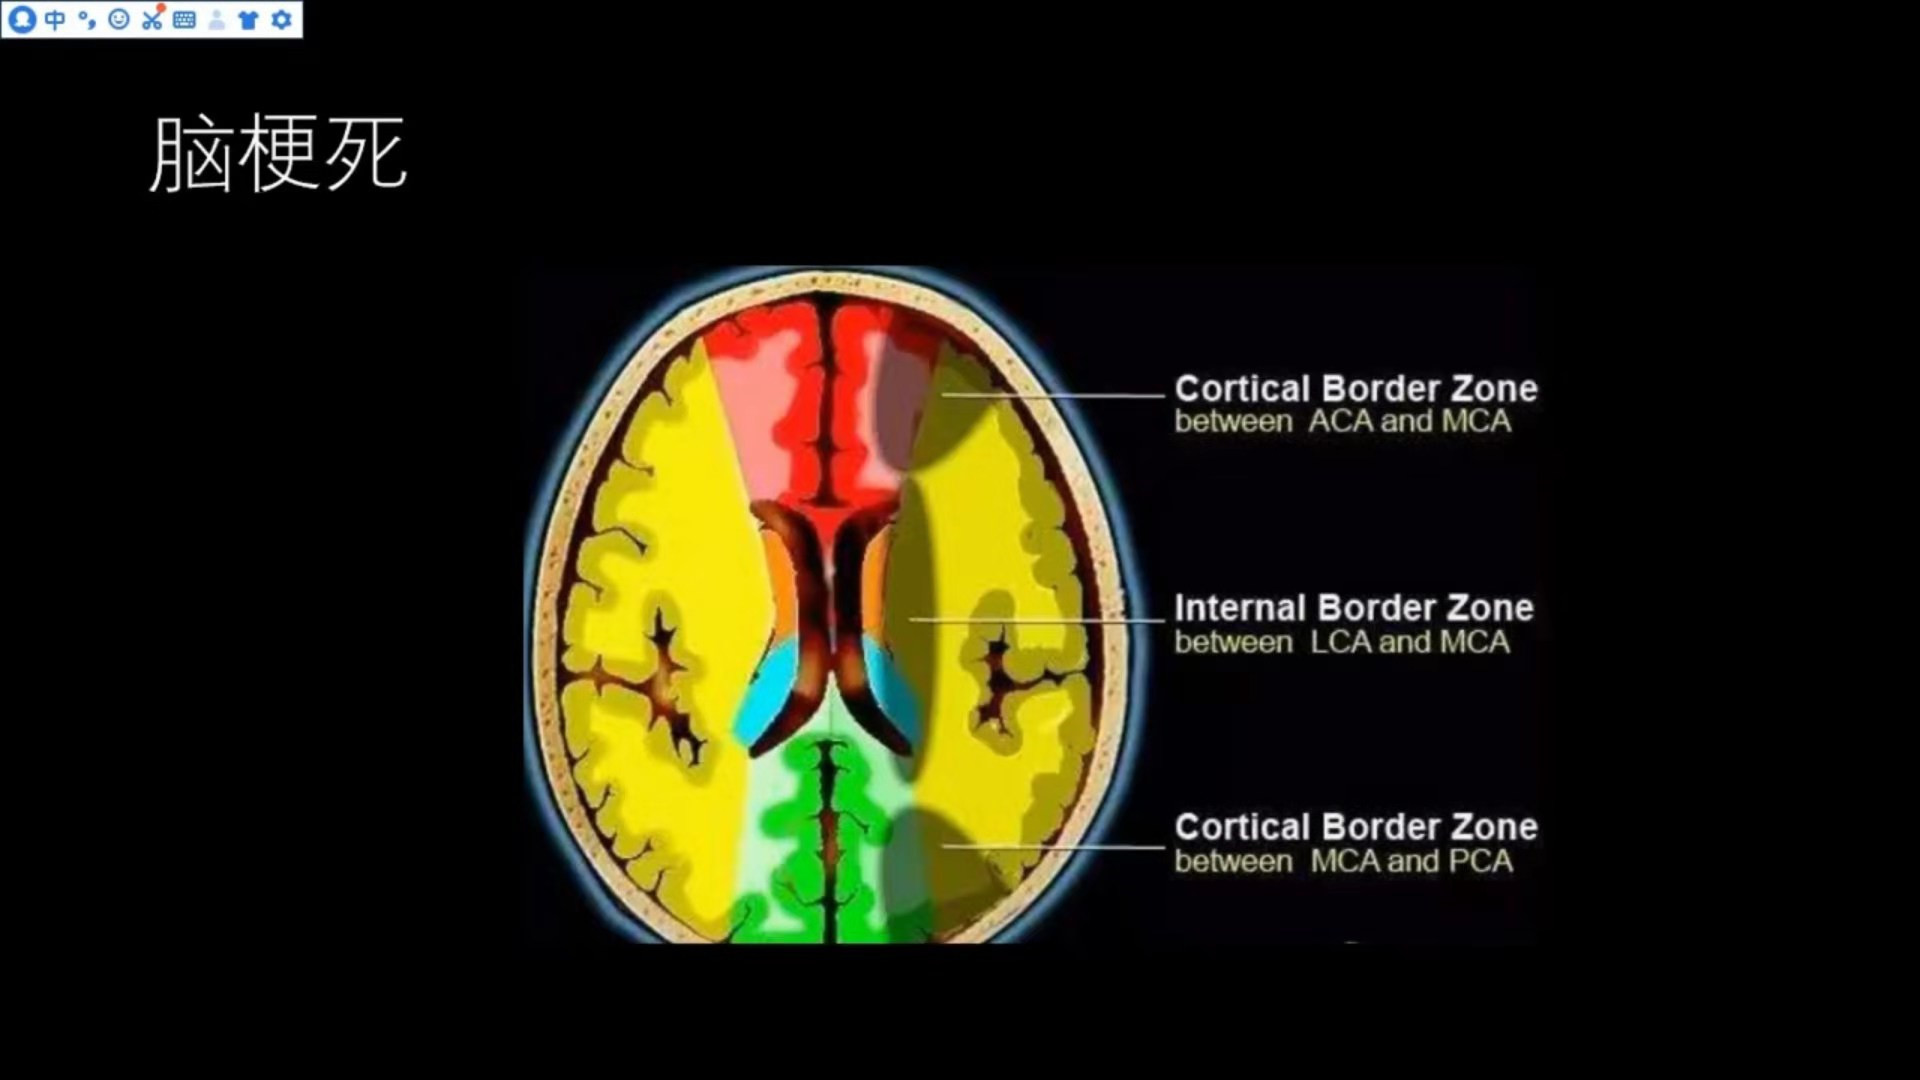 常见<font color="red">脑血管</font>疾病的MRI表现